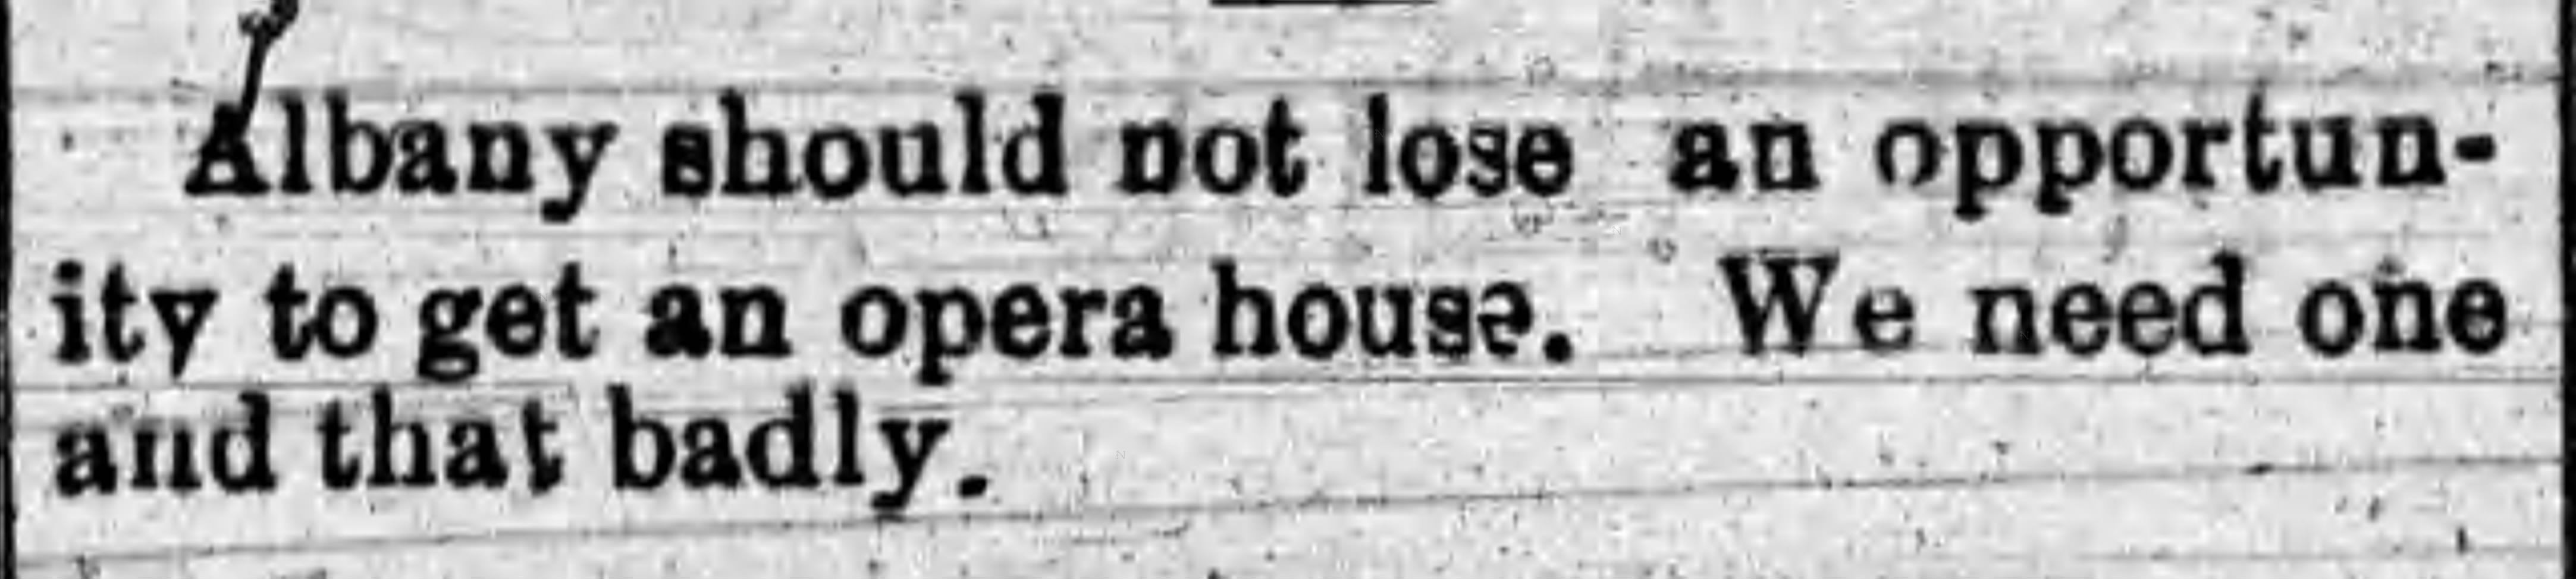 Opera House needed, Albany Democrat, 1901